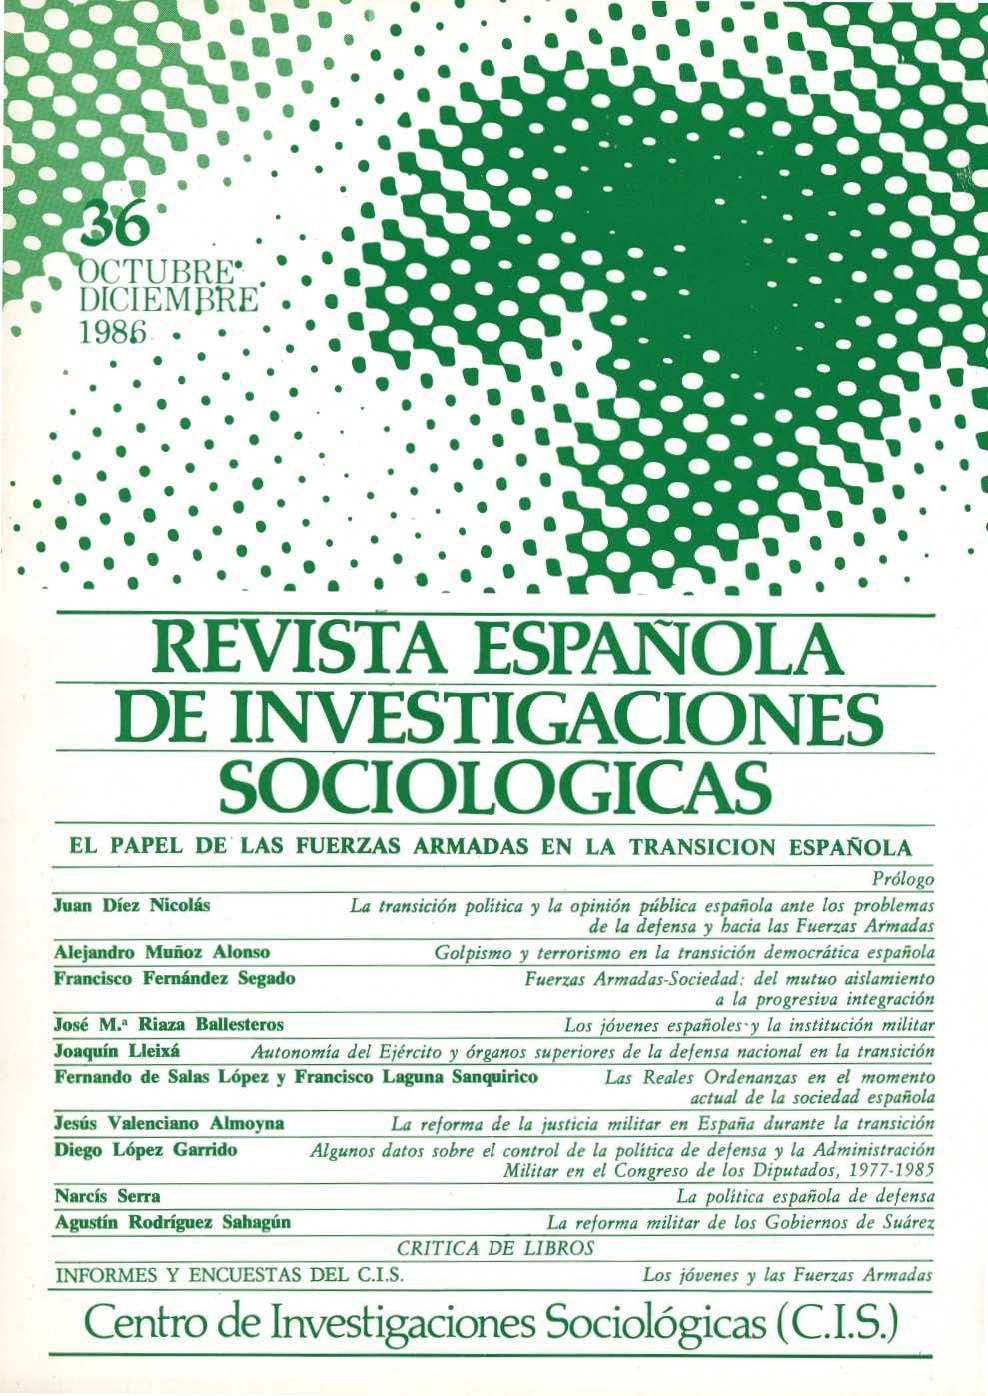 REIS. Revista Española de Investigaciones Sociológicas núm. 36